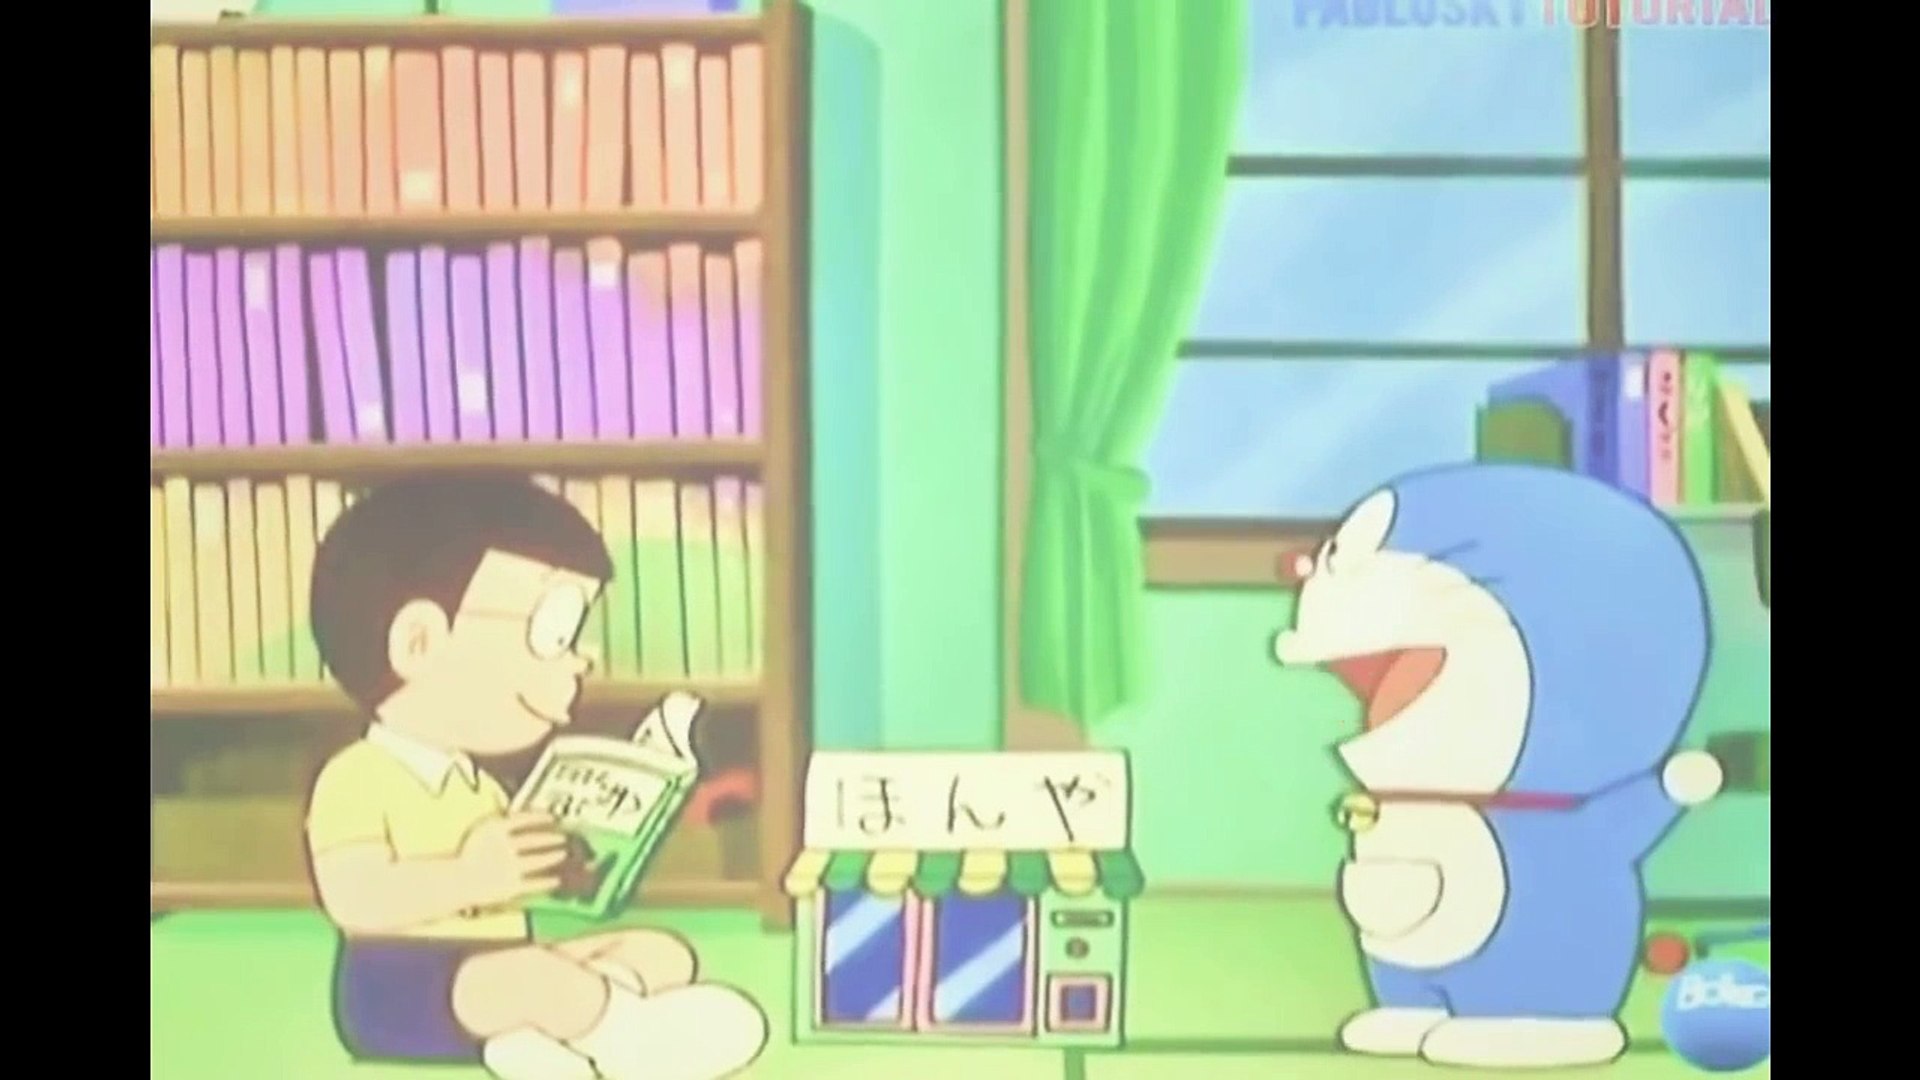 Dibujos Animados Doraemon en Español Capítulos De Doraemon Nuevos 2015 Puerta  mágica - video Dailymotion